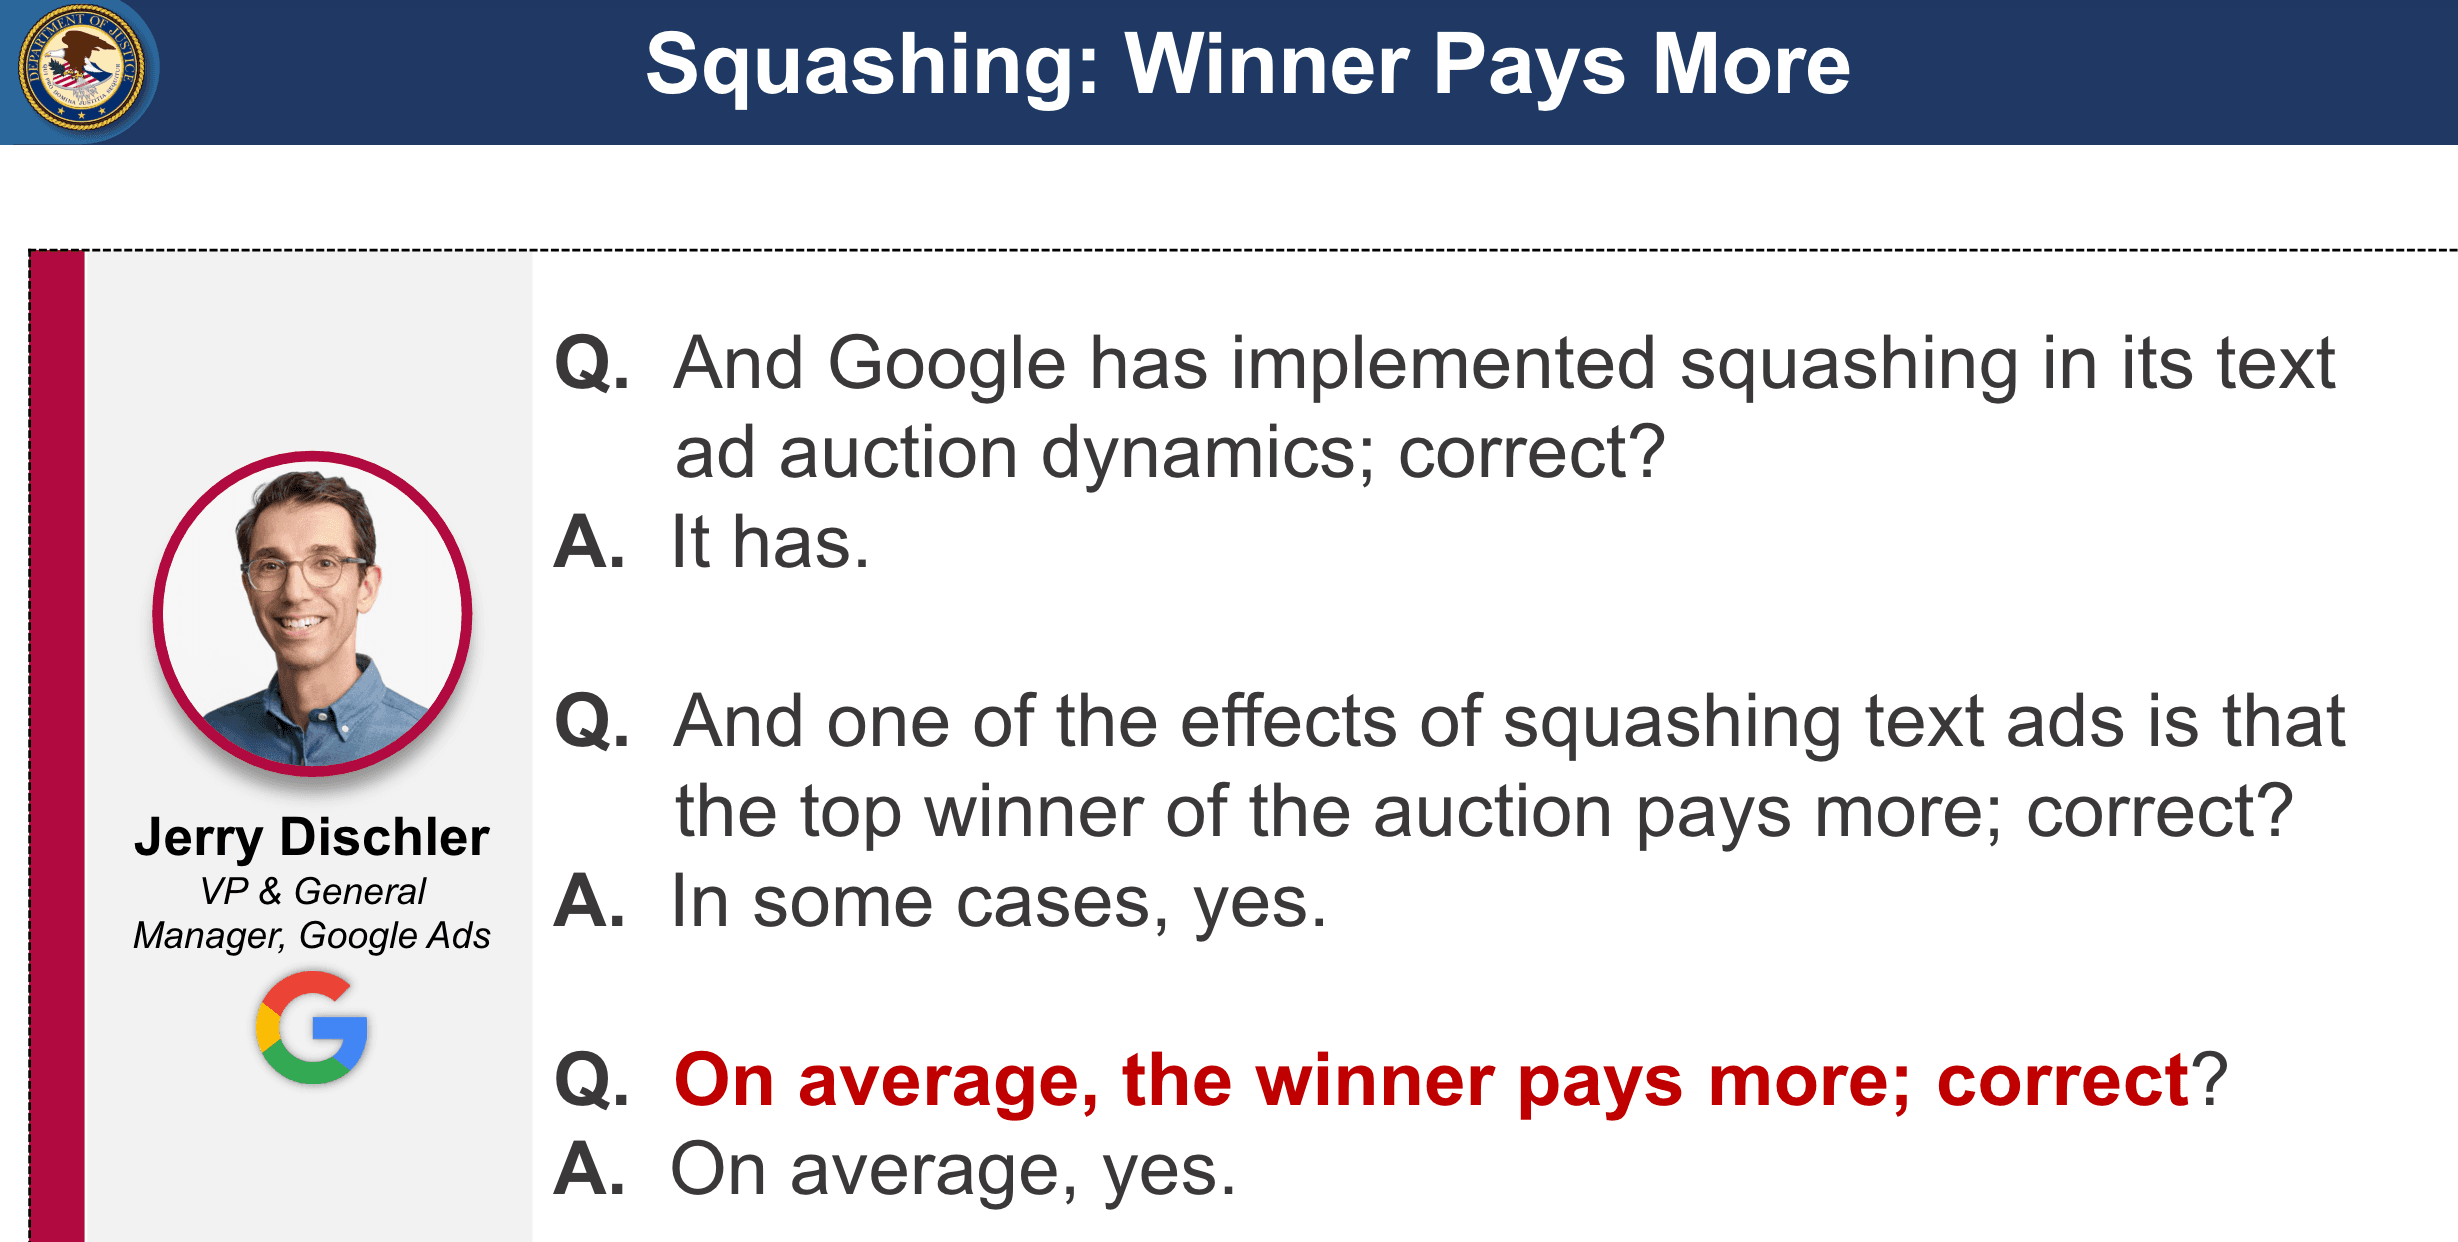 squashing winner pays more